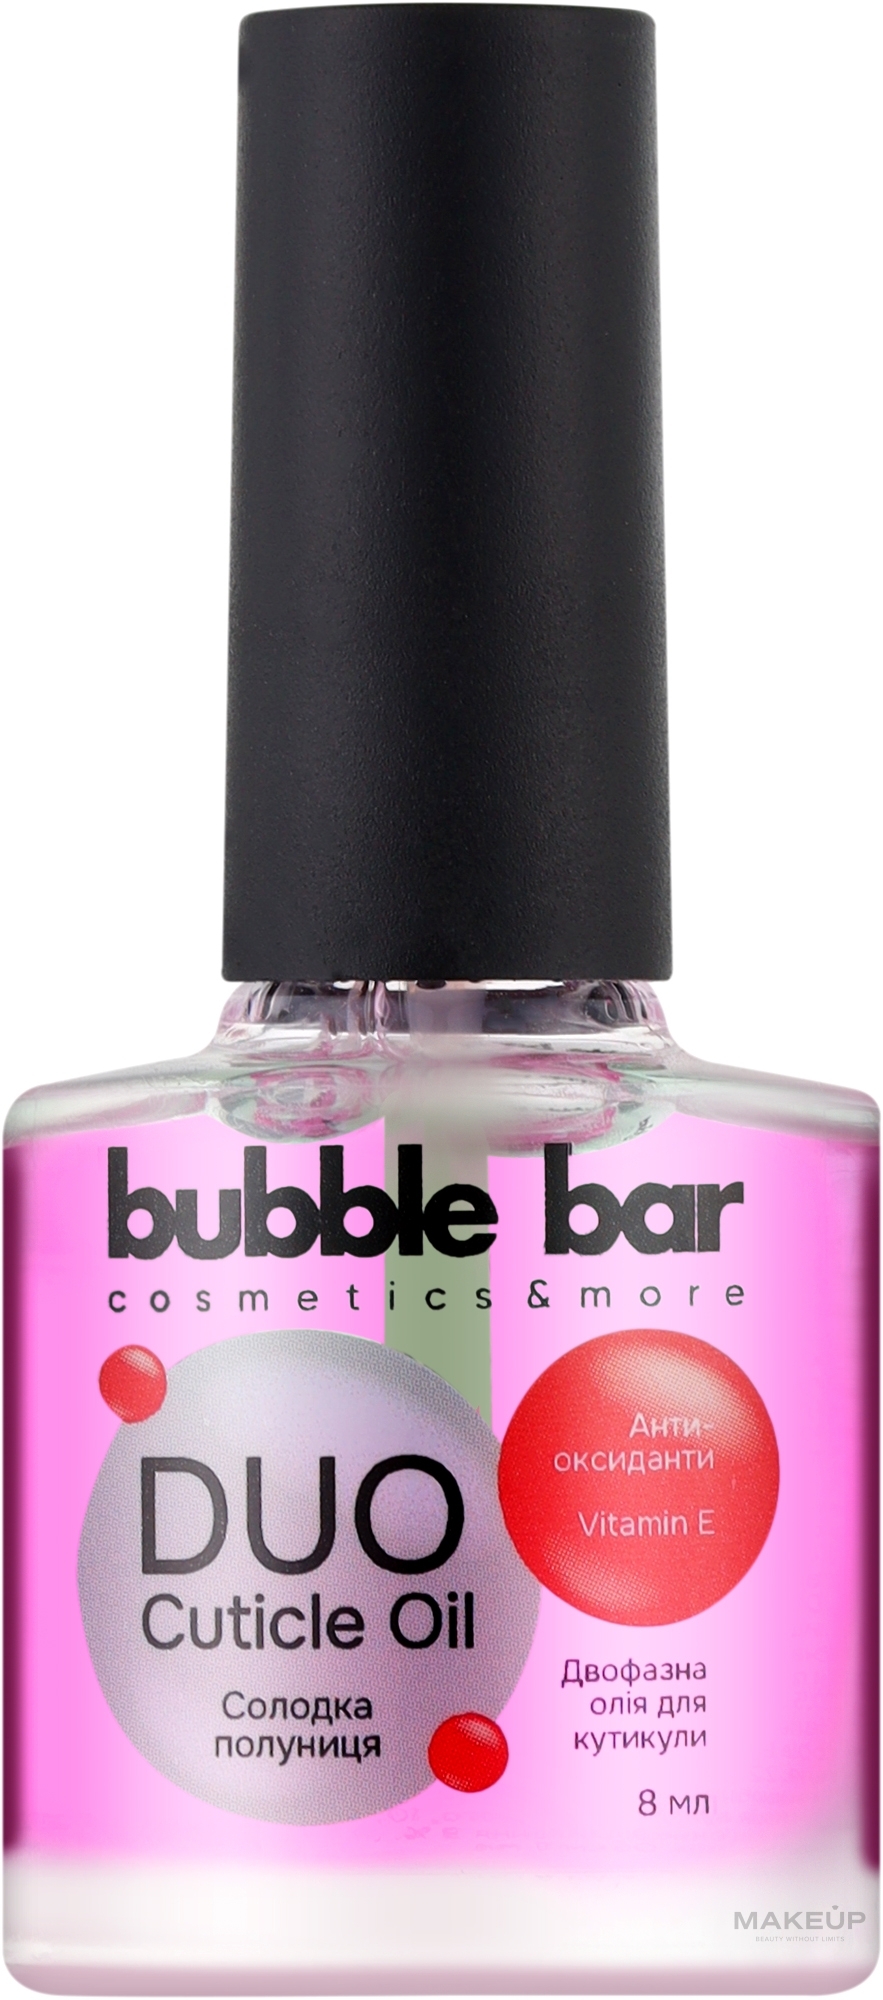 Двофазна олія для кутикули з антиоксидантами, солодка полуниця - Bubble Bar — фото 8ml